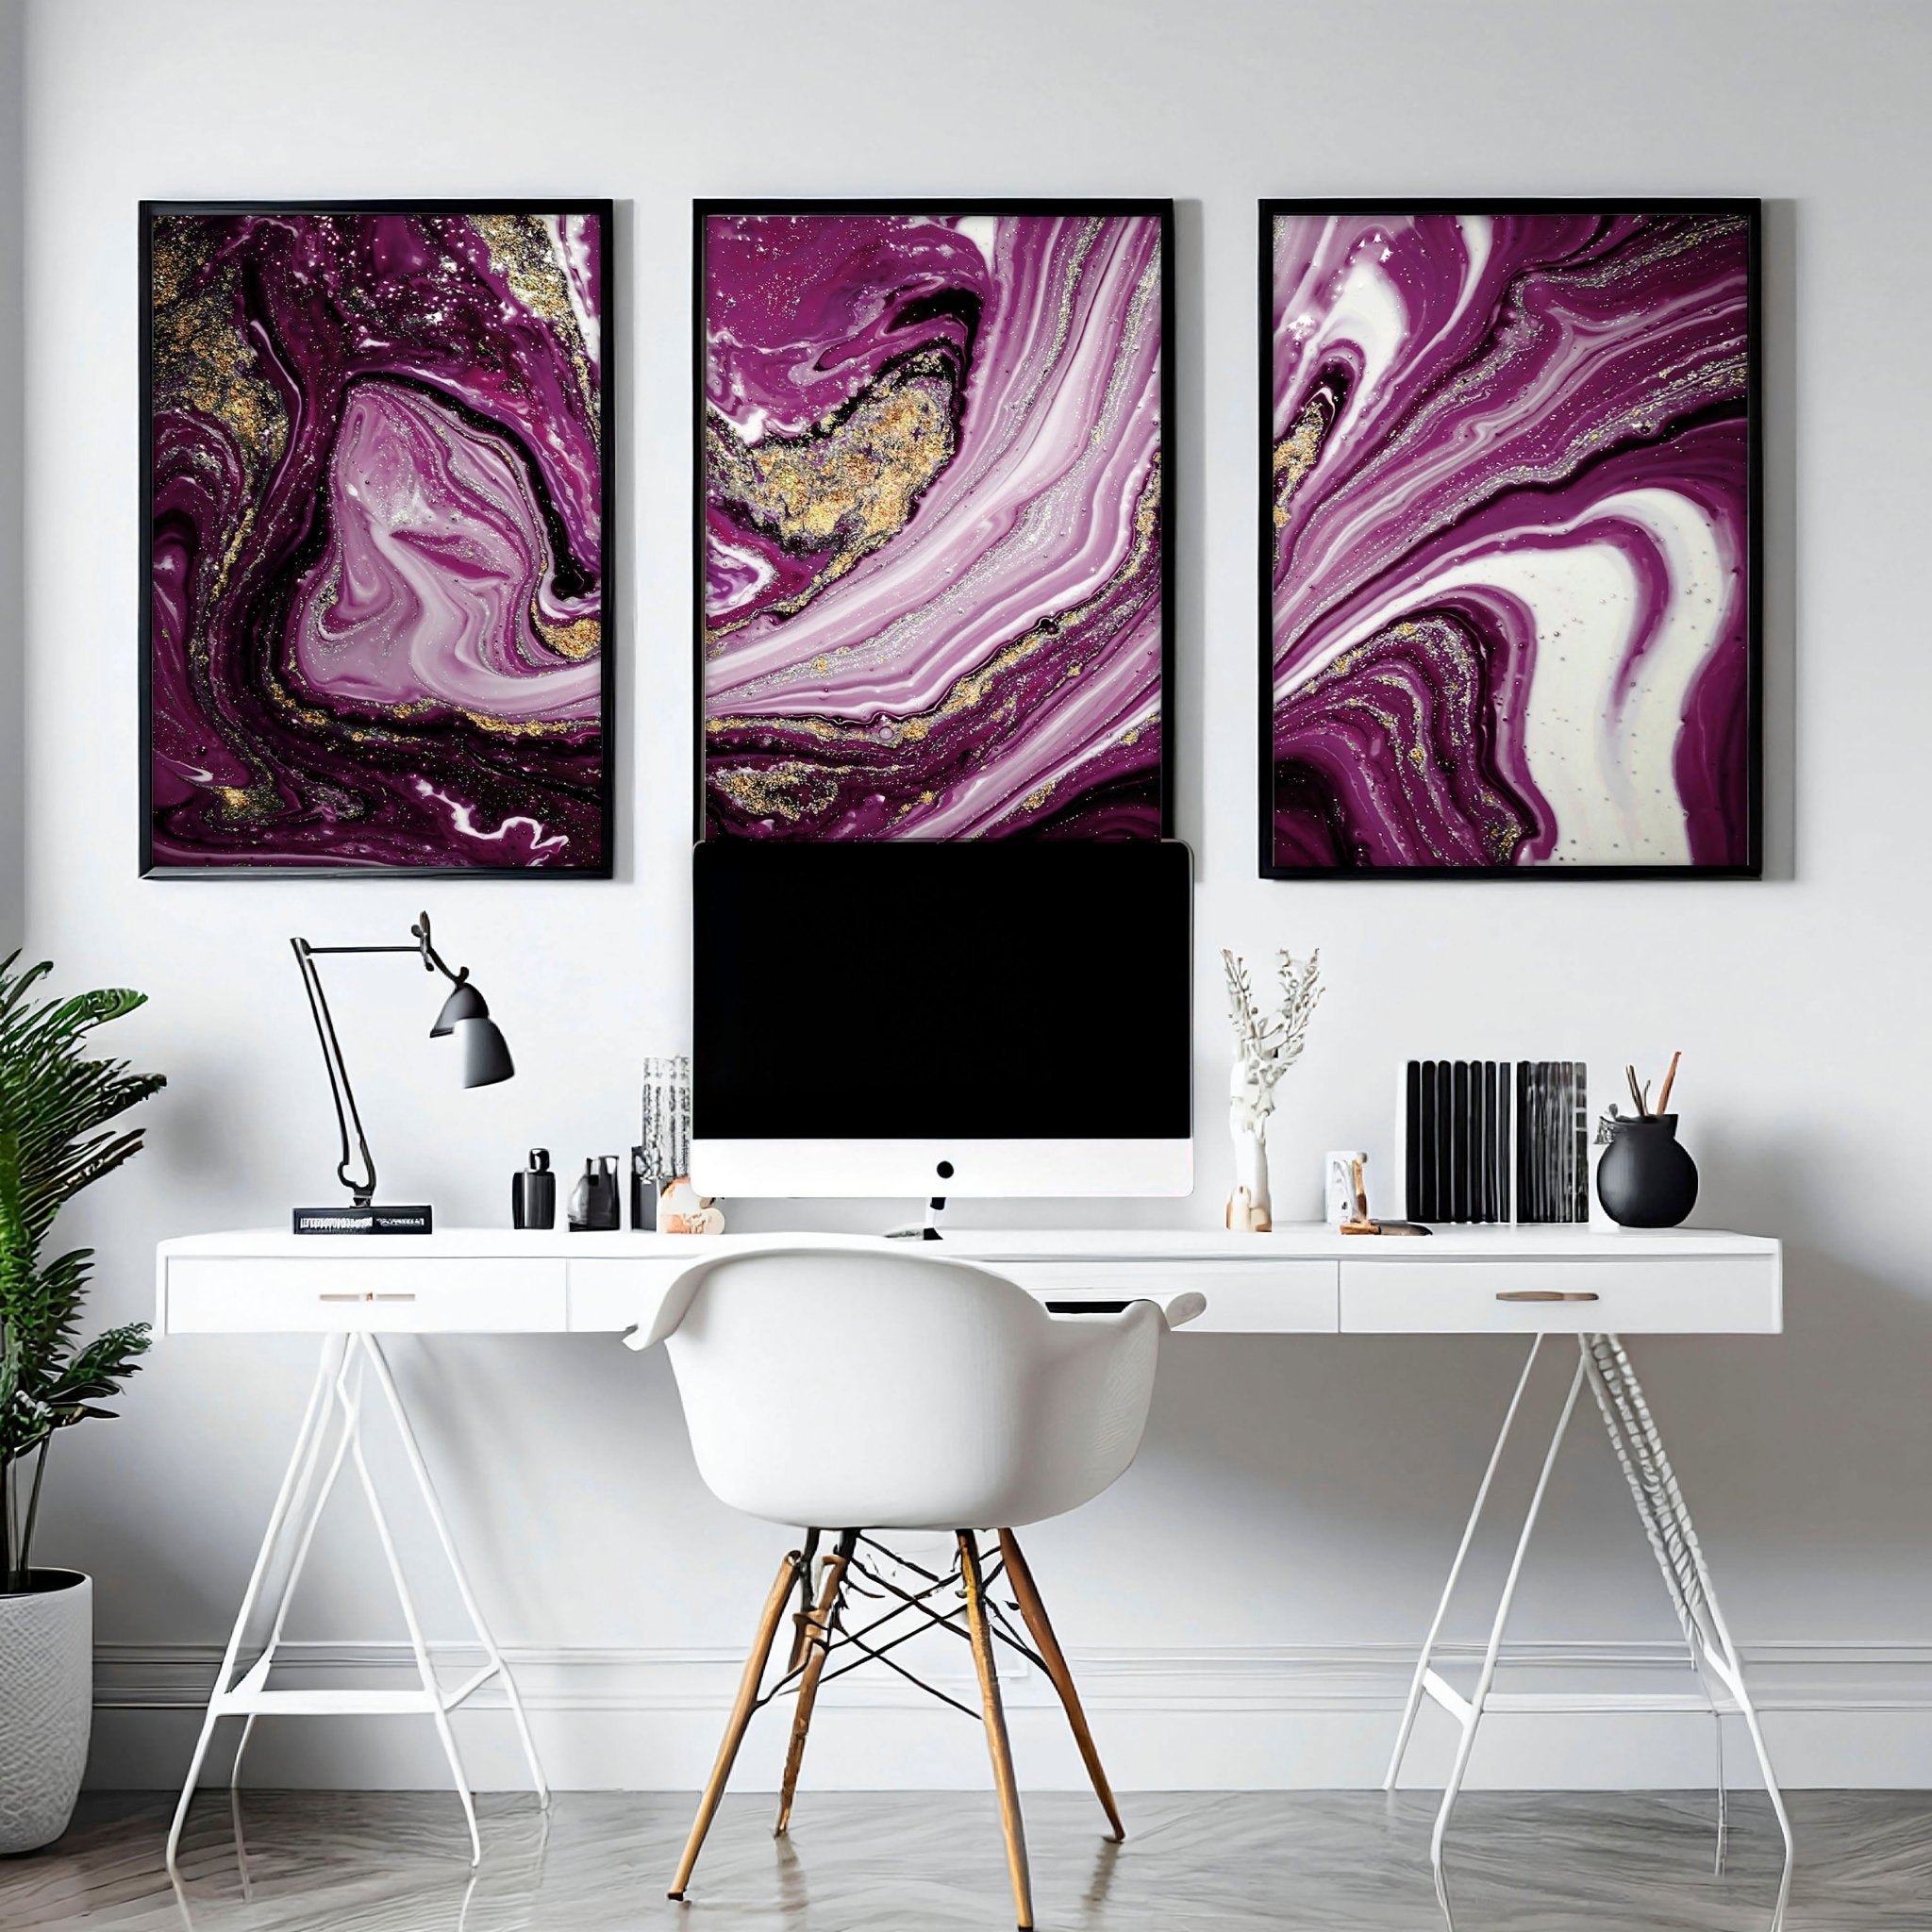 Juego de decoración de escritorio de oficina púrpura para mujeres x 3 impresiones de arte de pared enmarcadas, arte de pared de mármol abstracto maximalista para una decoración de escritorio de oficina audaz de abogado